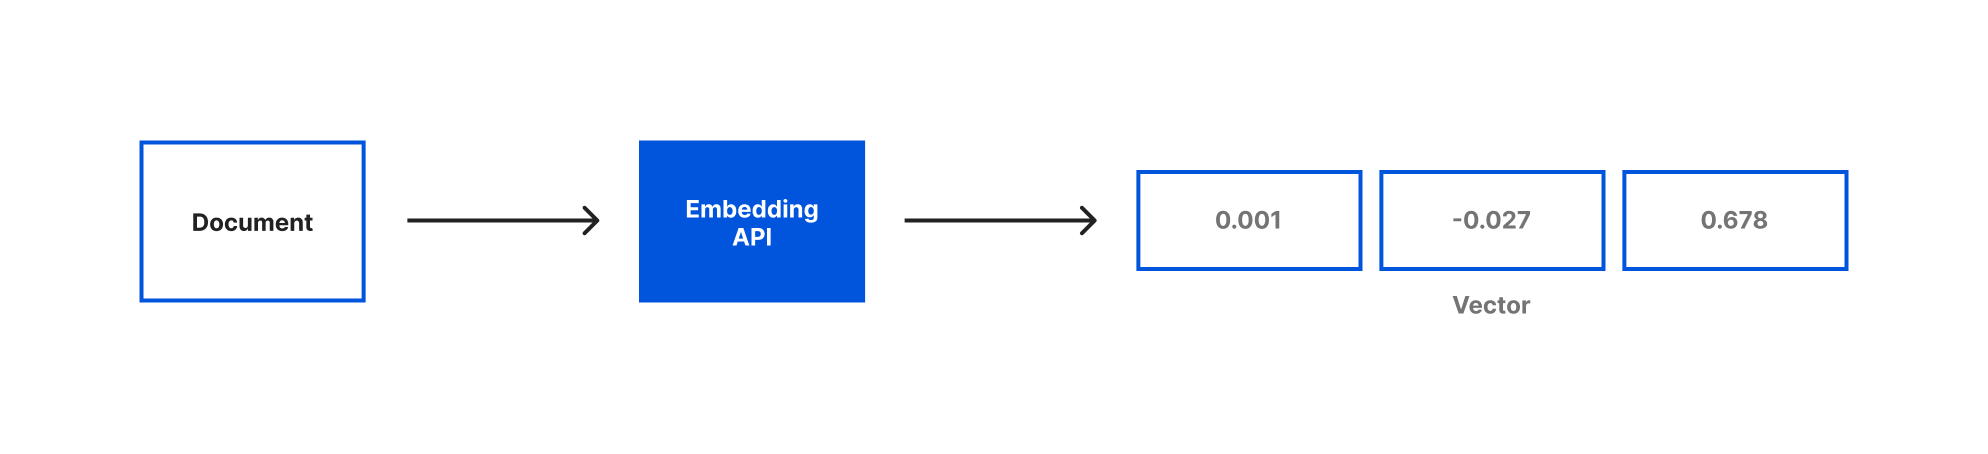 Embeddings - Documento à esquerda convertido em vetor com três dimensões à direita pela API de embeddings